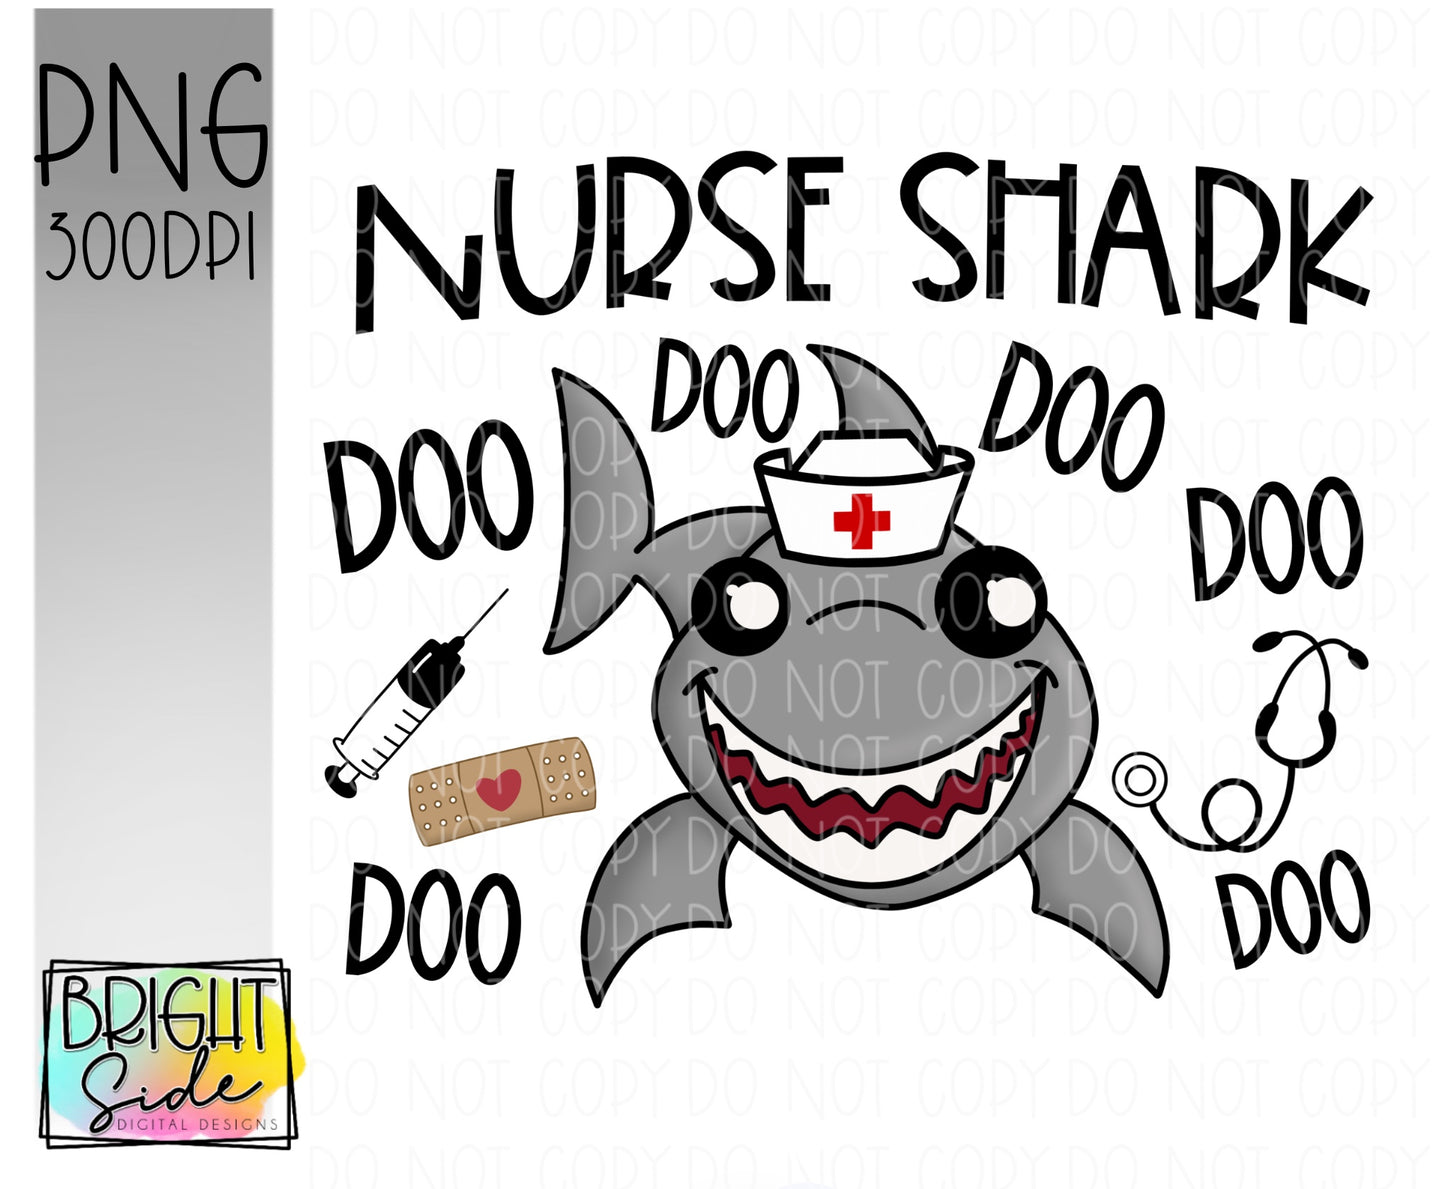 Nurse Shark Doo Doo Doo